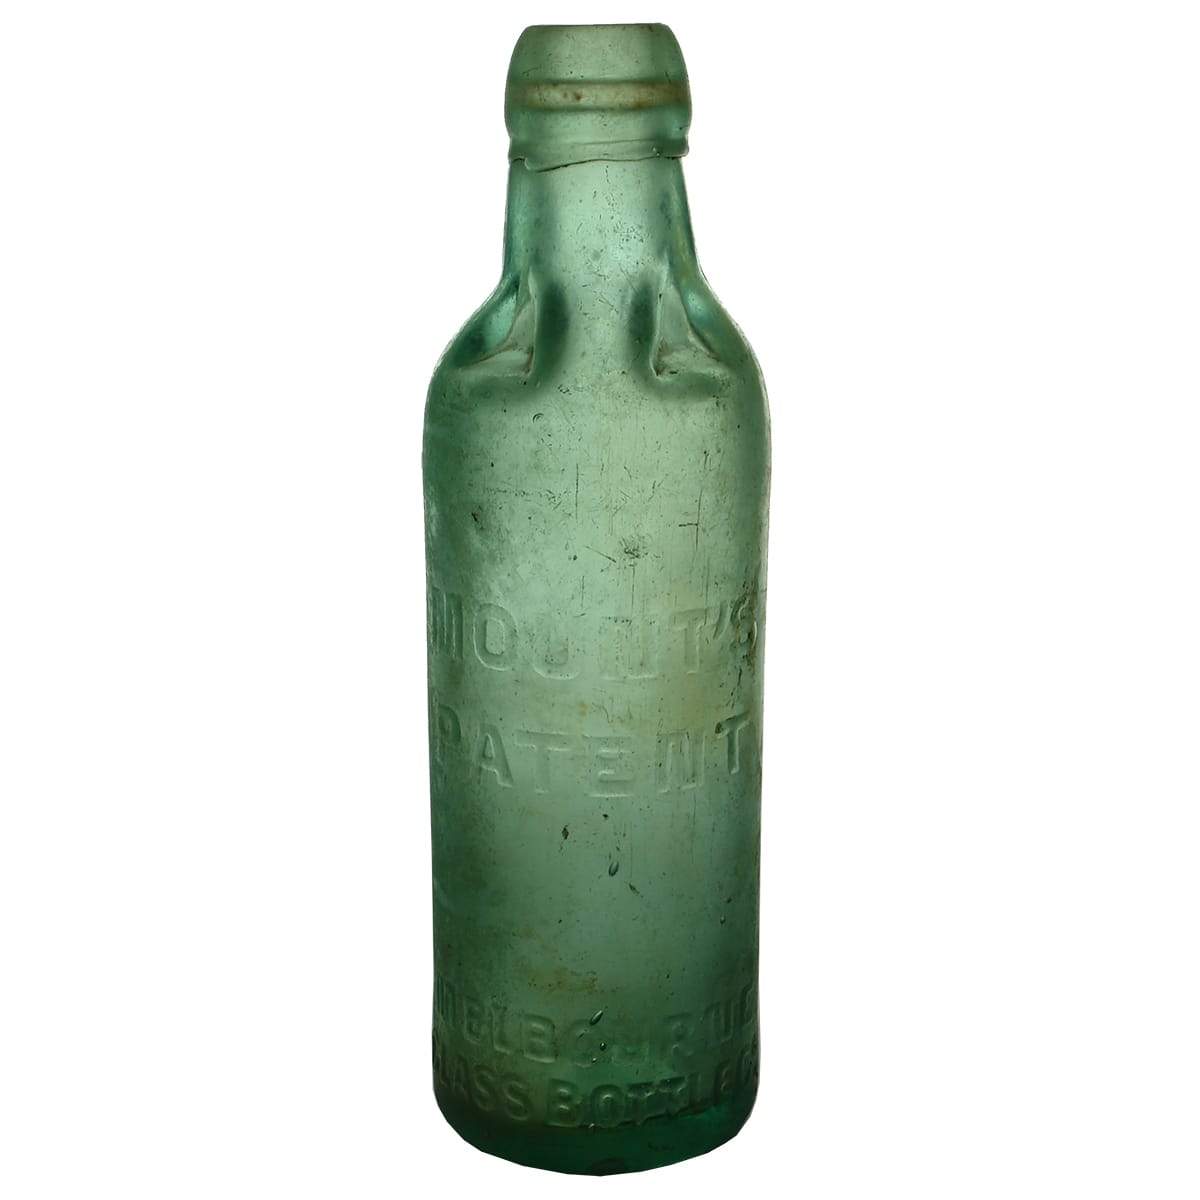 Patent. Mount's, Melbourne Glass Bottle Co. Aqua. 10 oz. (Victoria)